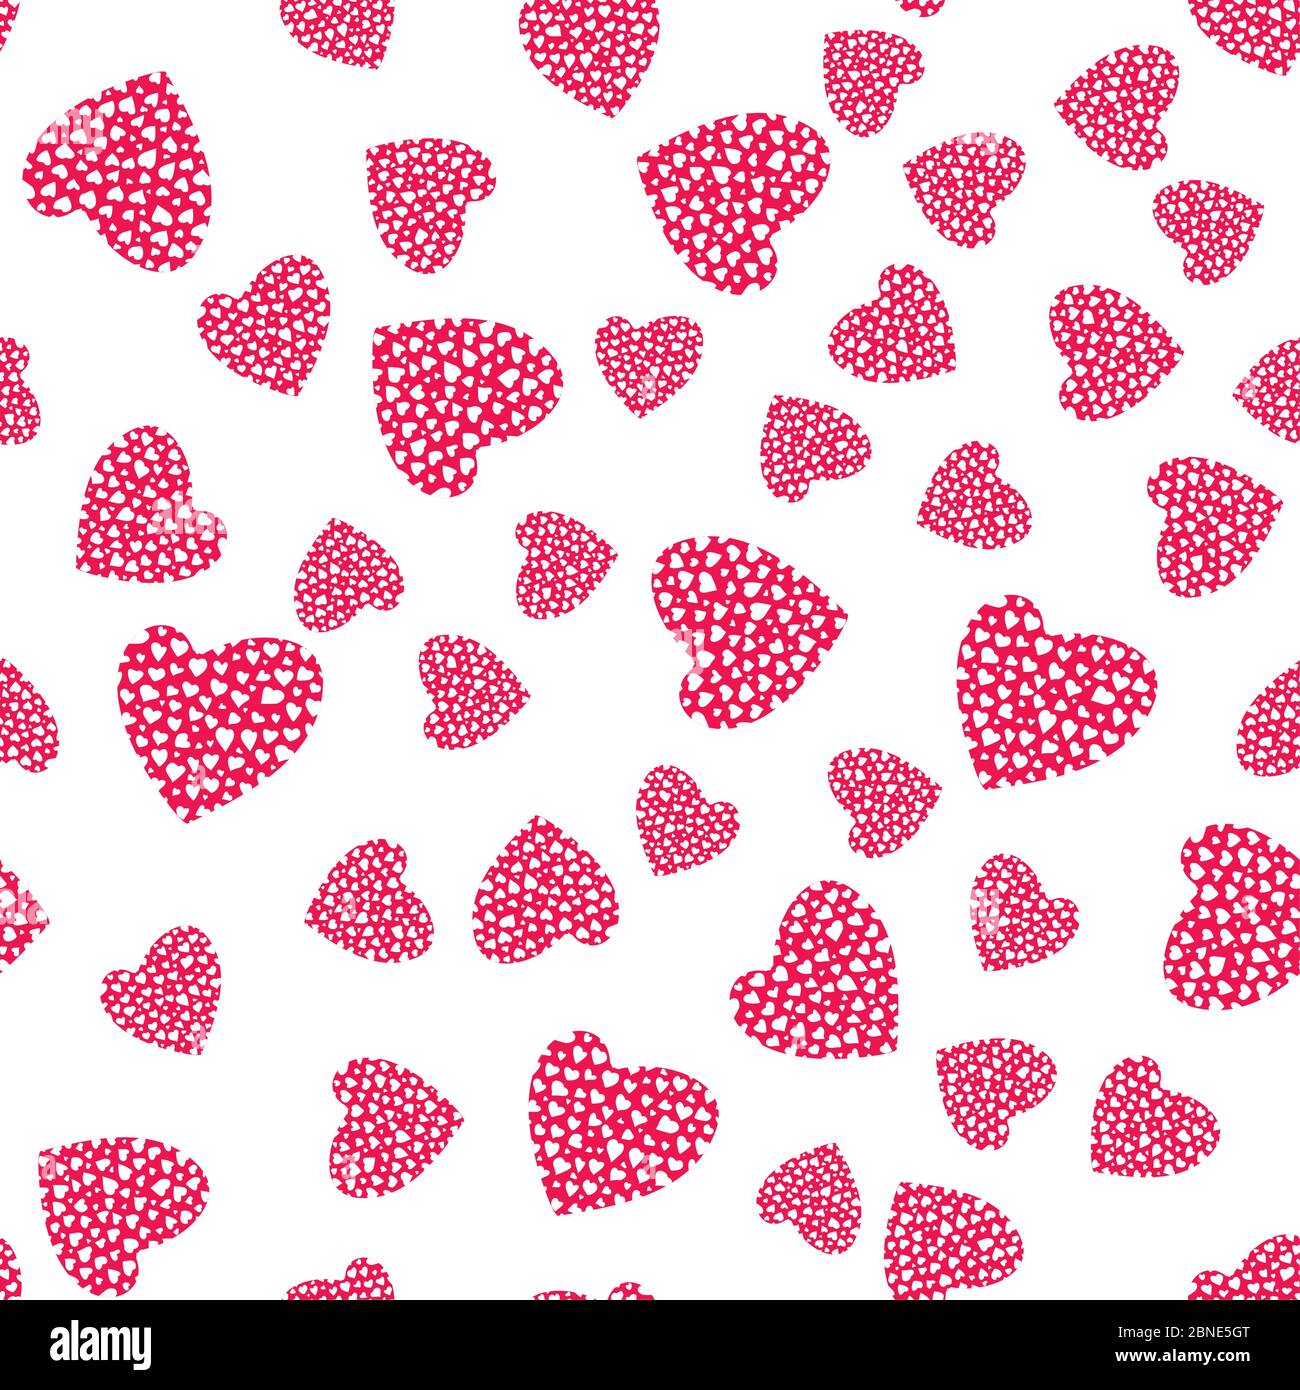 Herz nahtloses Muster. Rosa und weiß romantischen Hintergrund. Verpackung Textur für Valentinstag Geschenk oder Grußkarte Design. Vektor eps8 Abbildung Stock Vektor